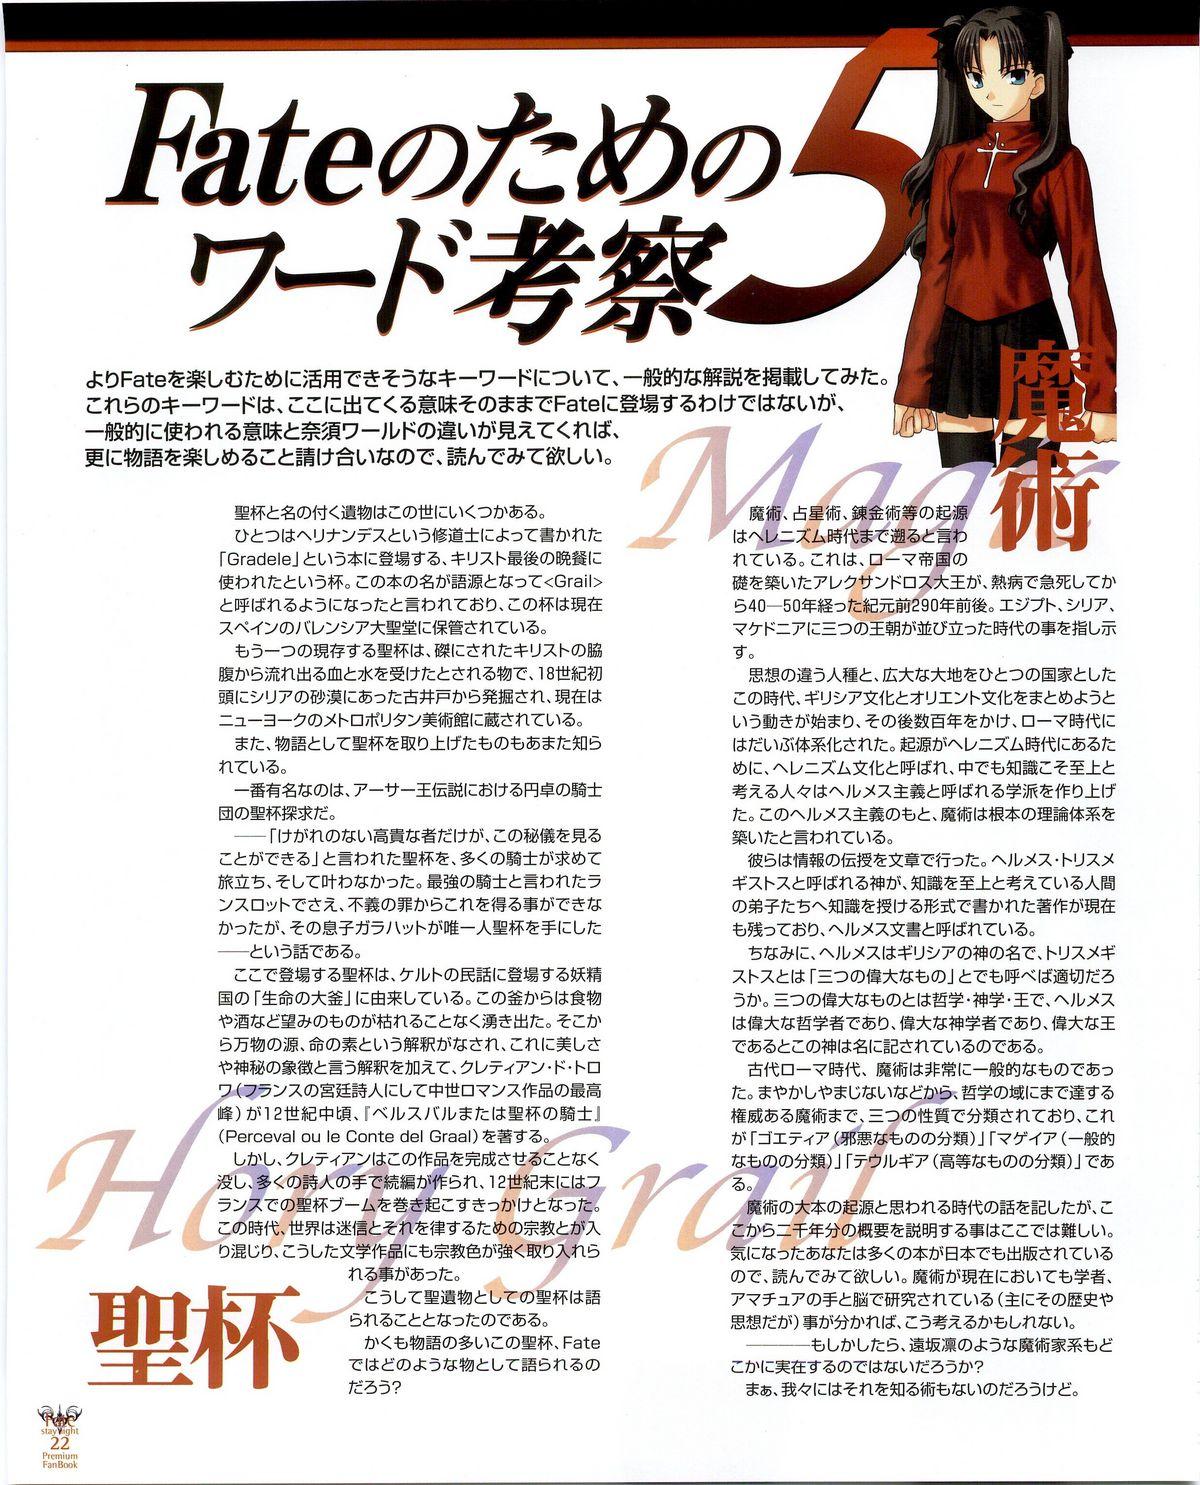 Fate/stay night Premium FanBook 13